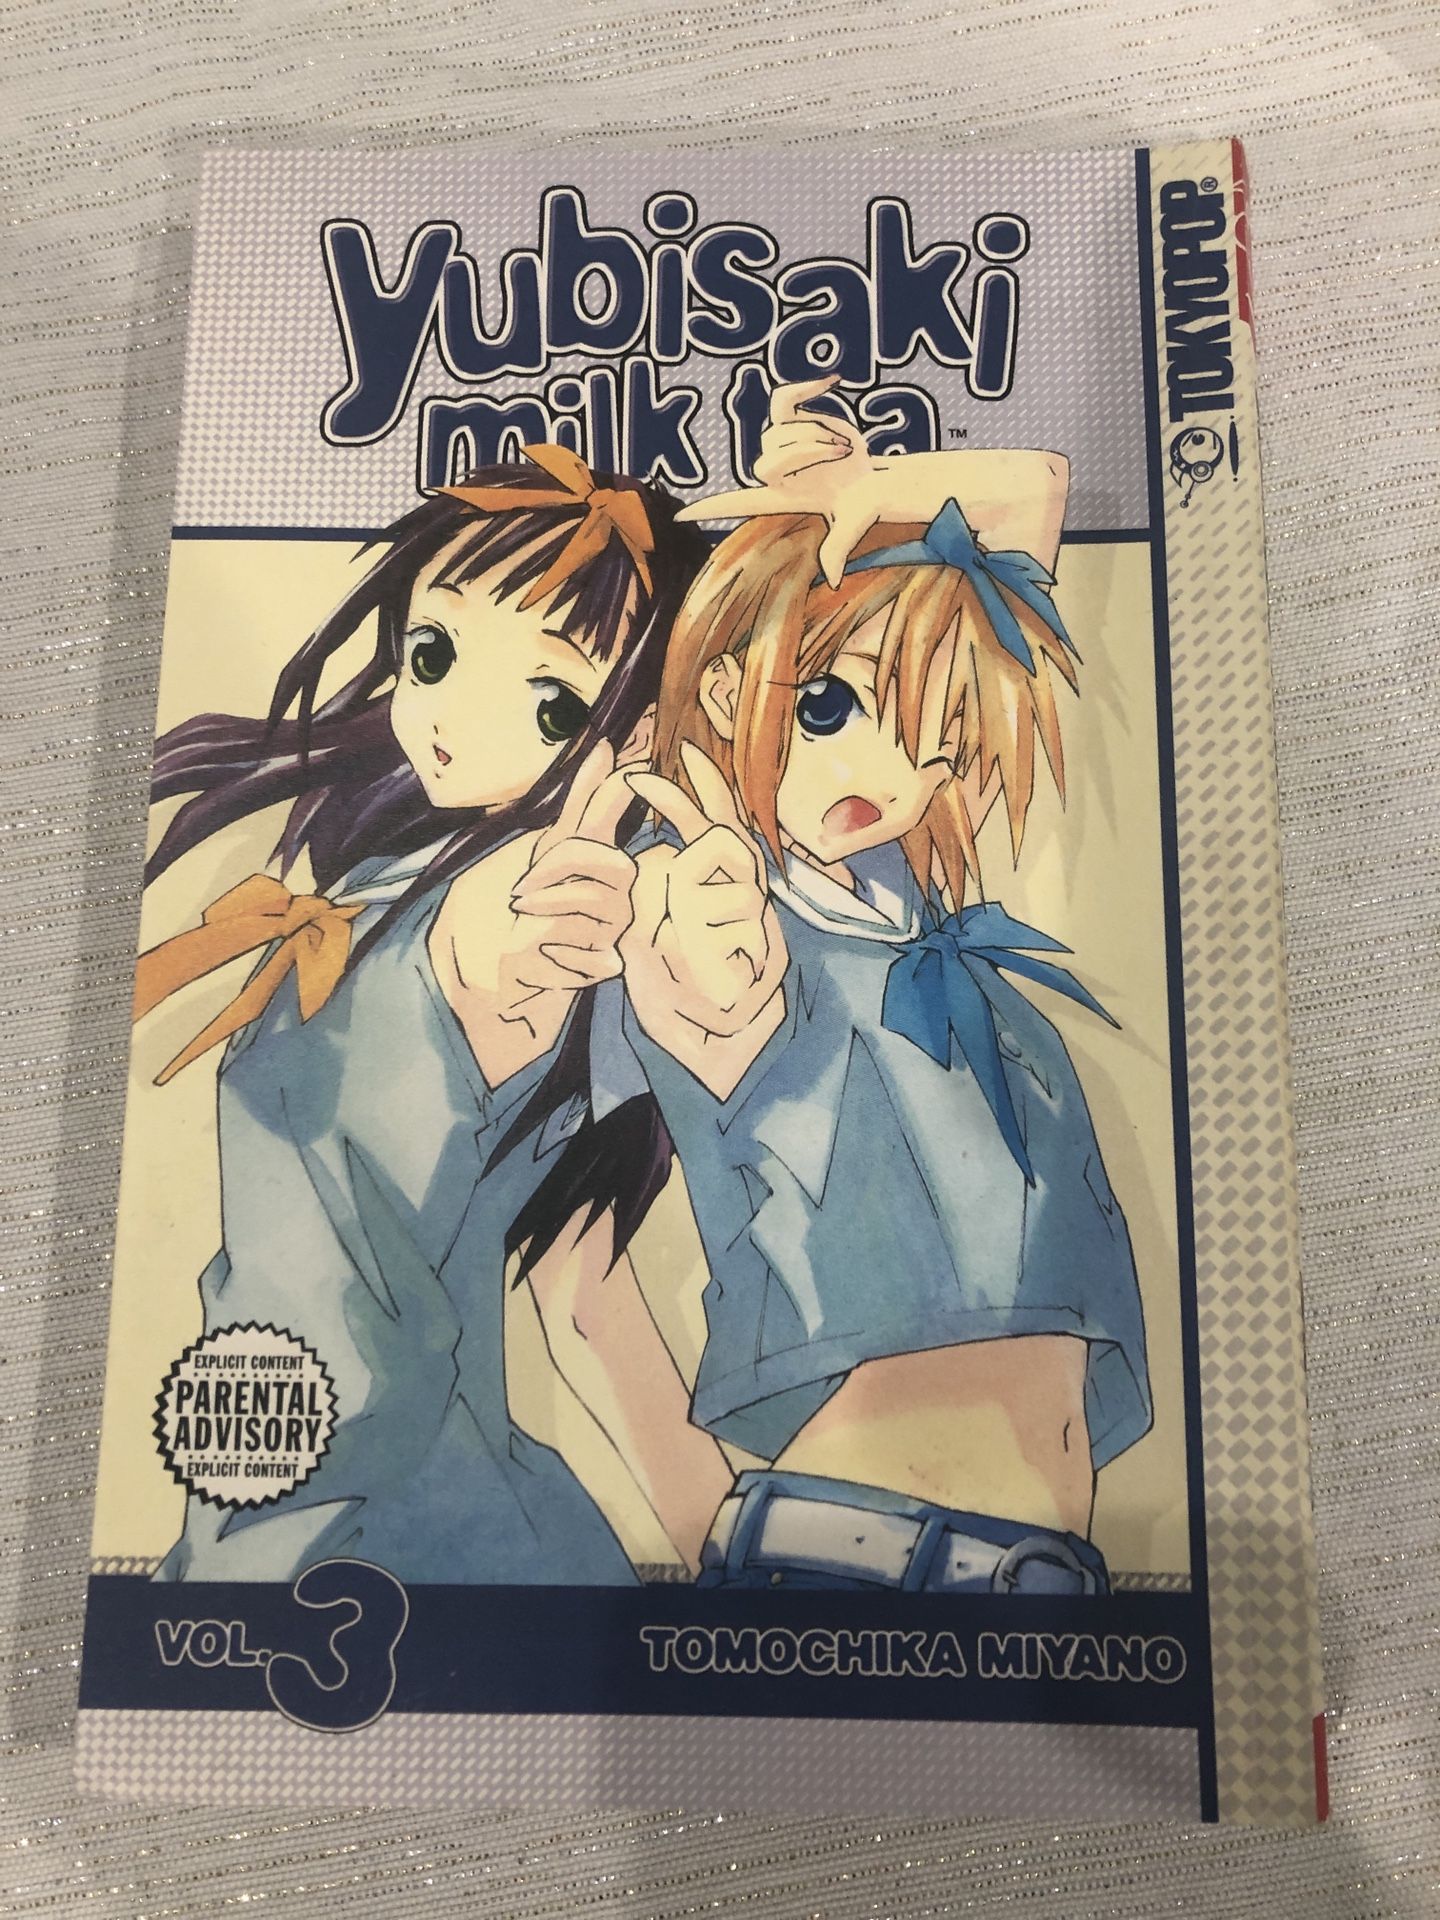 Yubisaki Milk Tea manga